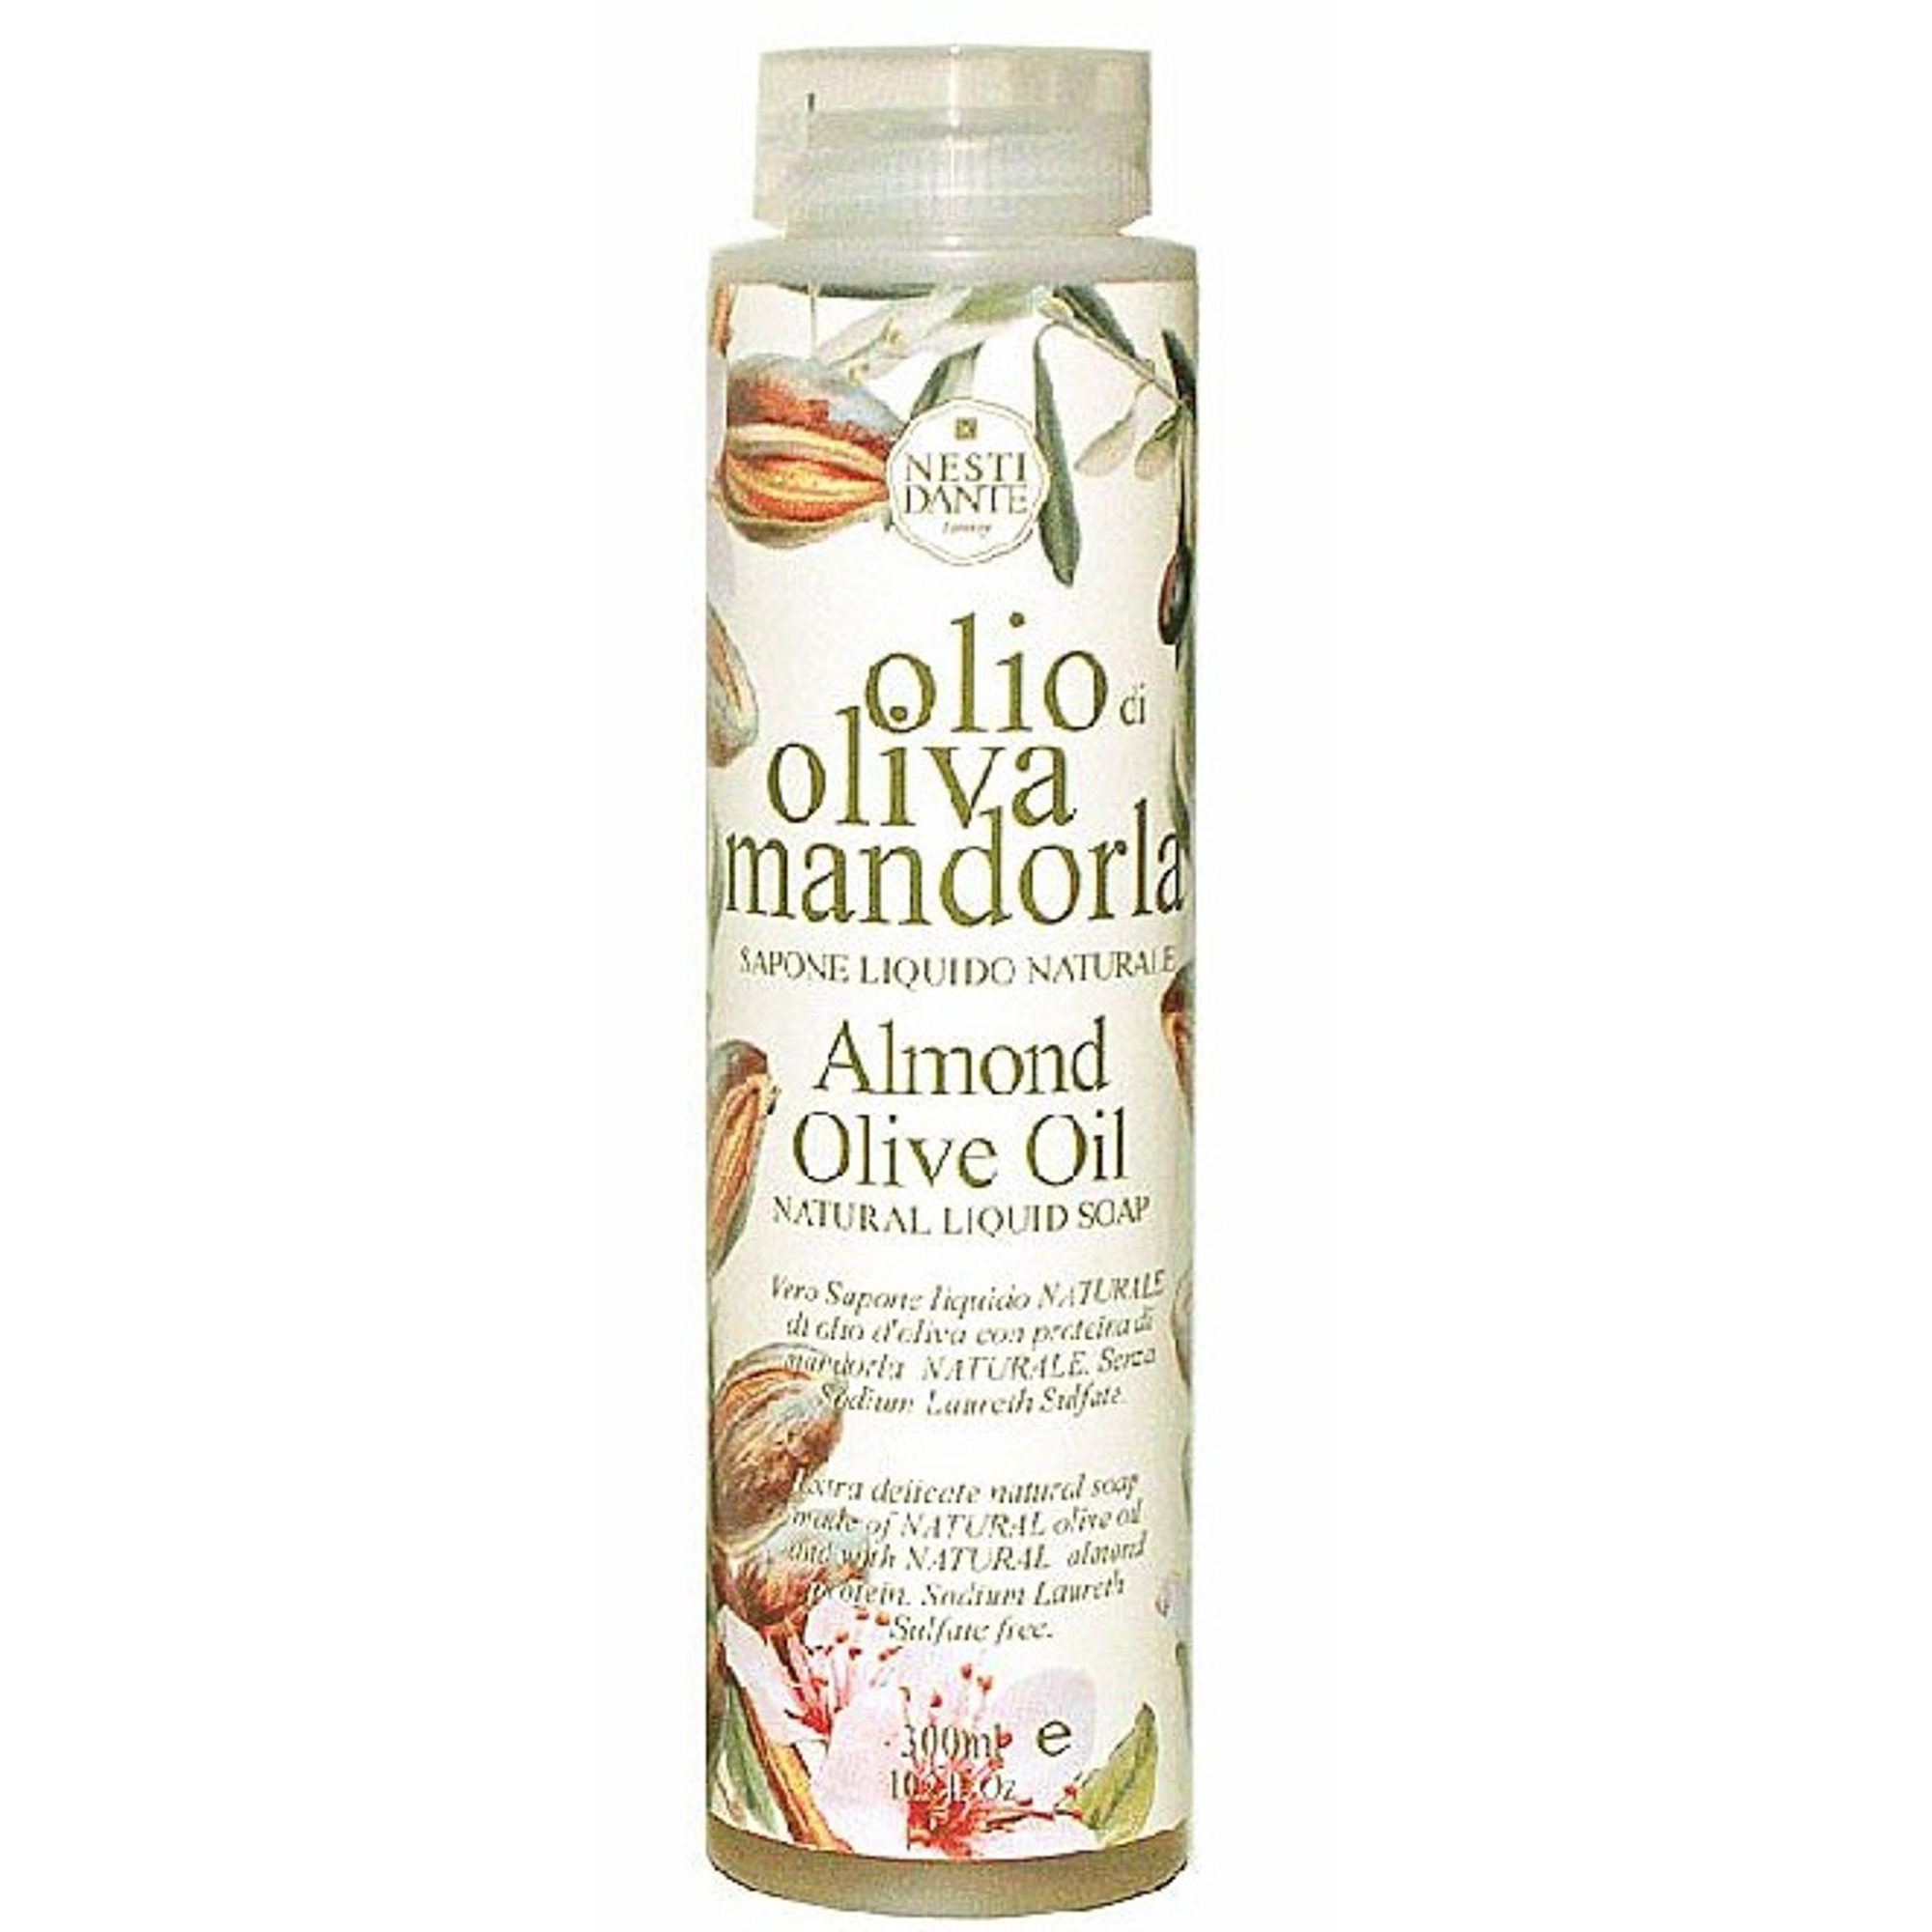 Гель для душа оливковое масло/мандарин 300мл Nesti dante масло для душа пенящееся 250мл